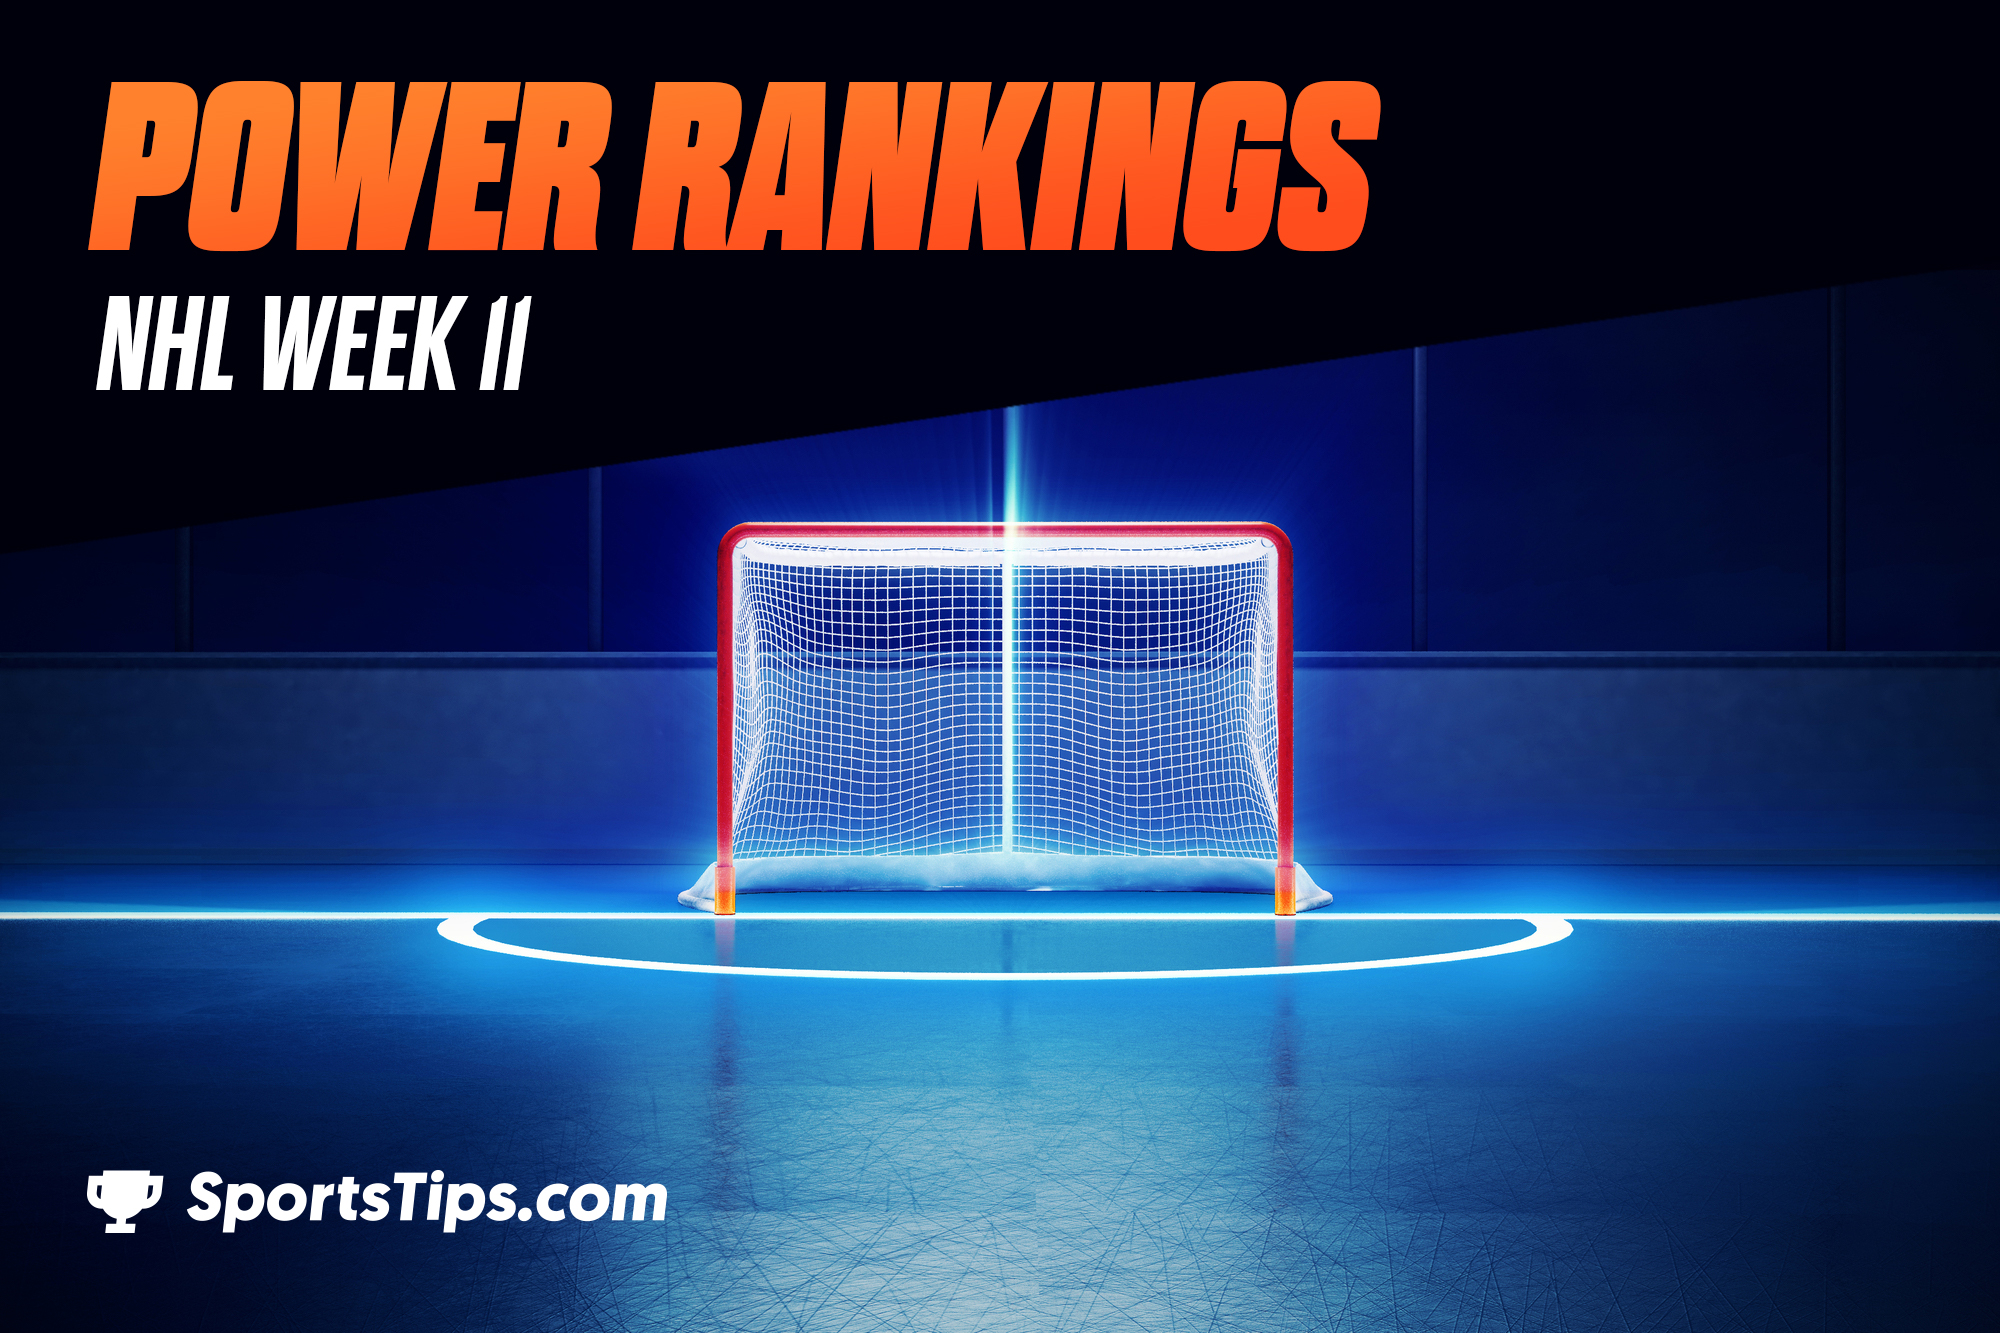 SportsTips’ NHL Power Rankings 2021: Week 11